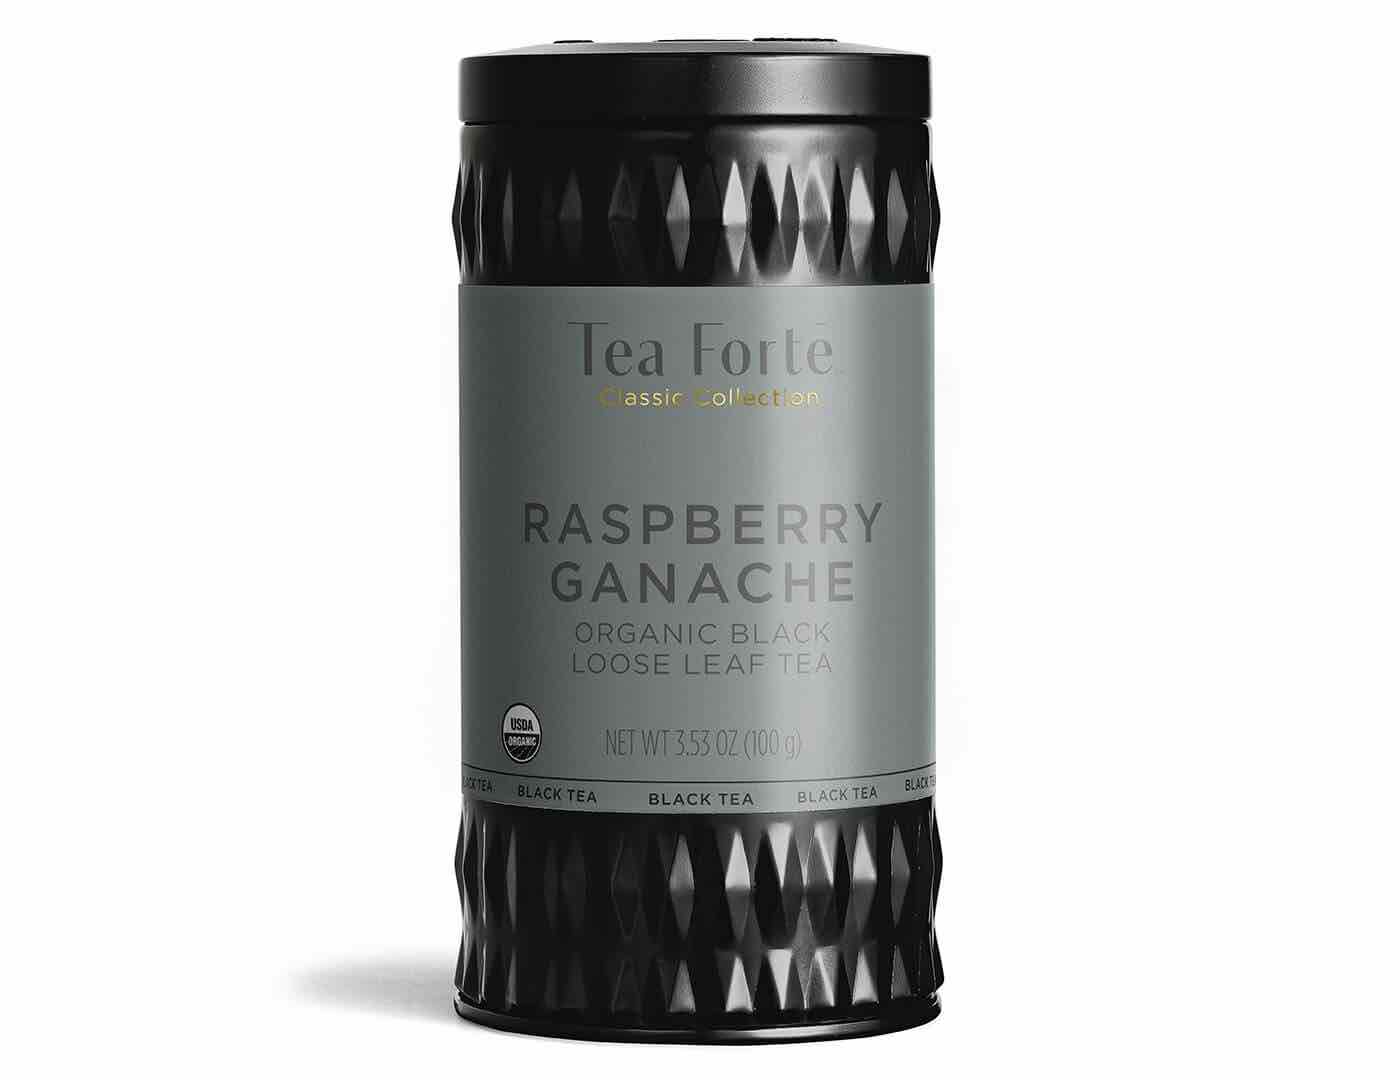 Tea Forte Black Tea Canister | Raspberry Ganache